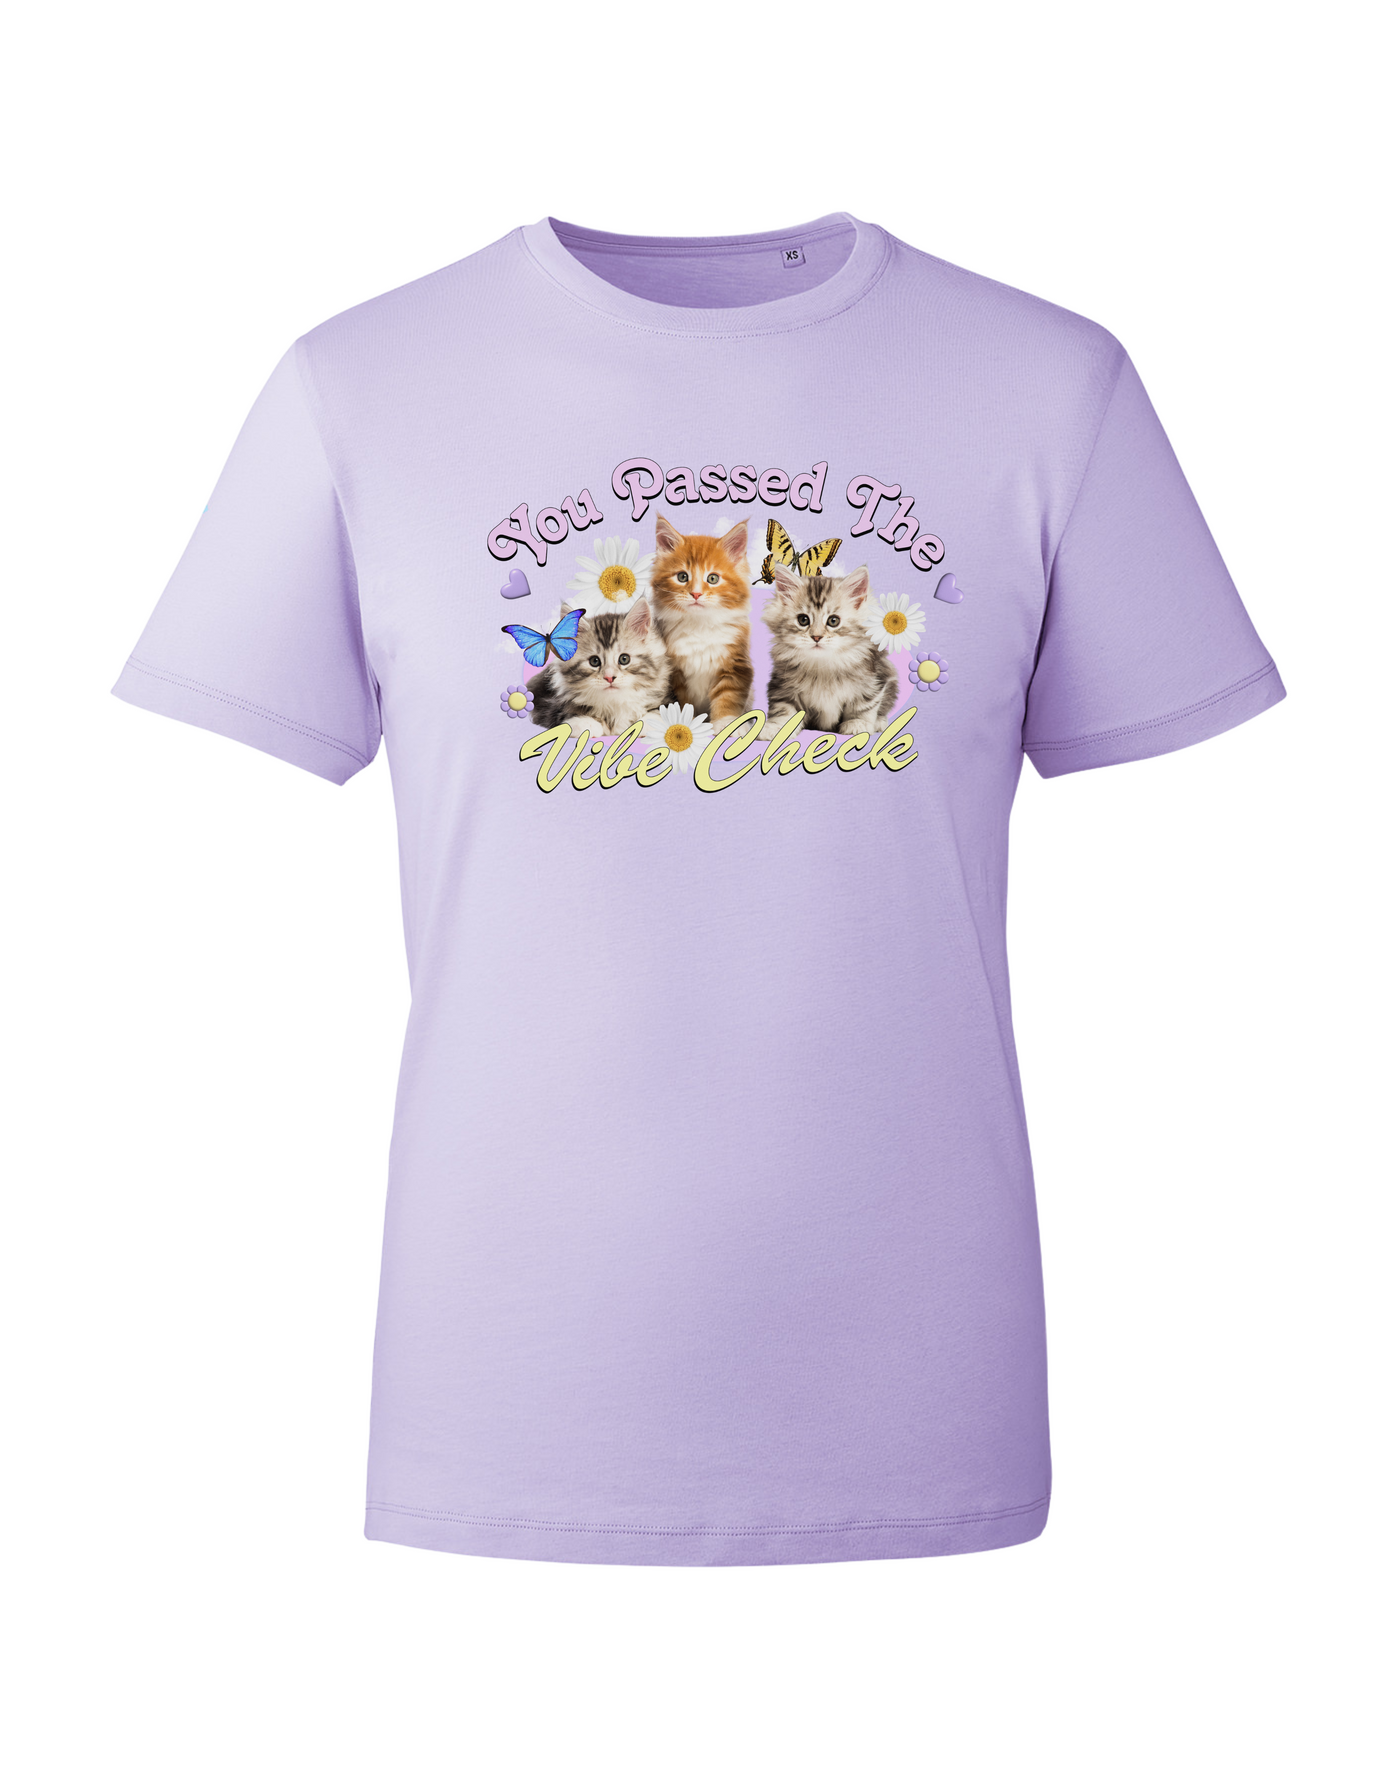 Lilac "Vibe Check" Kittens Unisex Organic T-Shirt